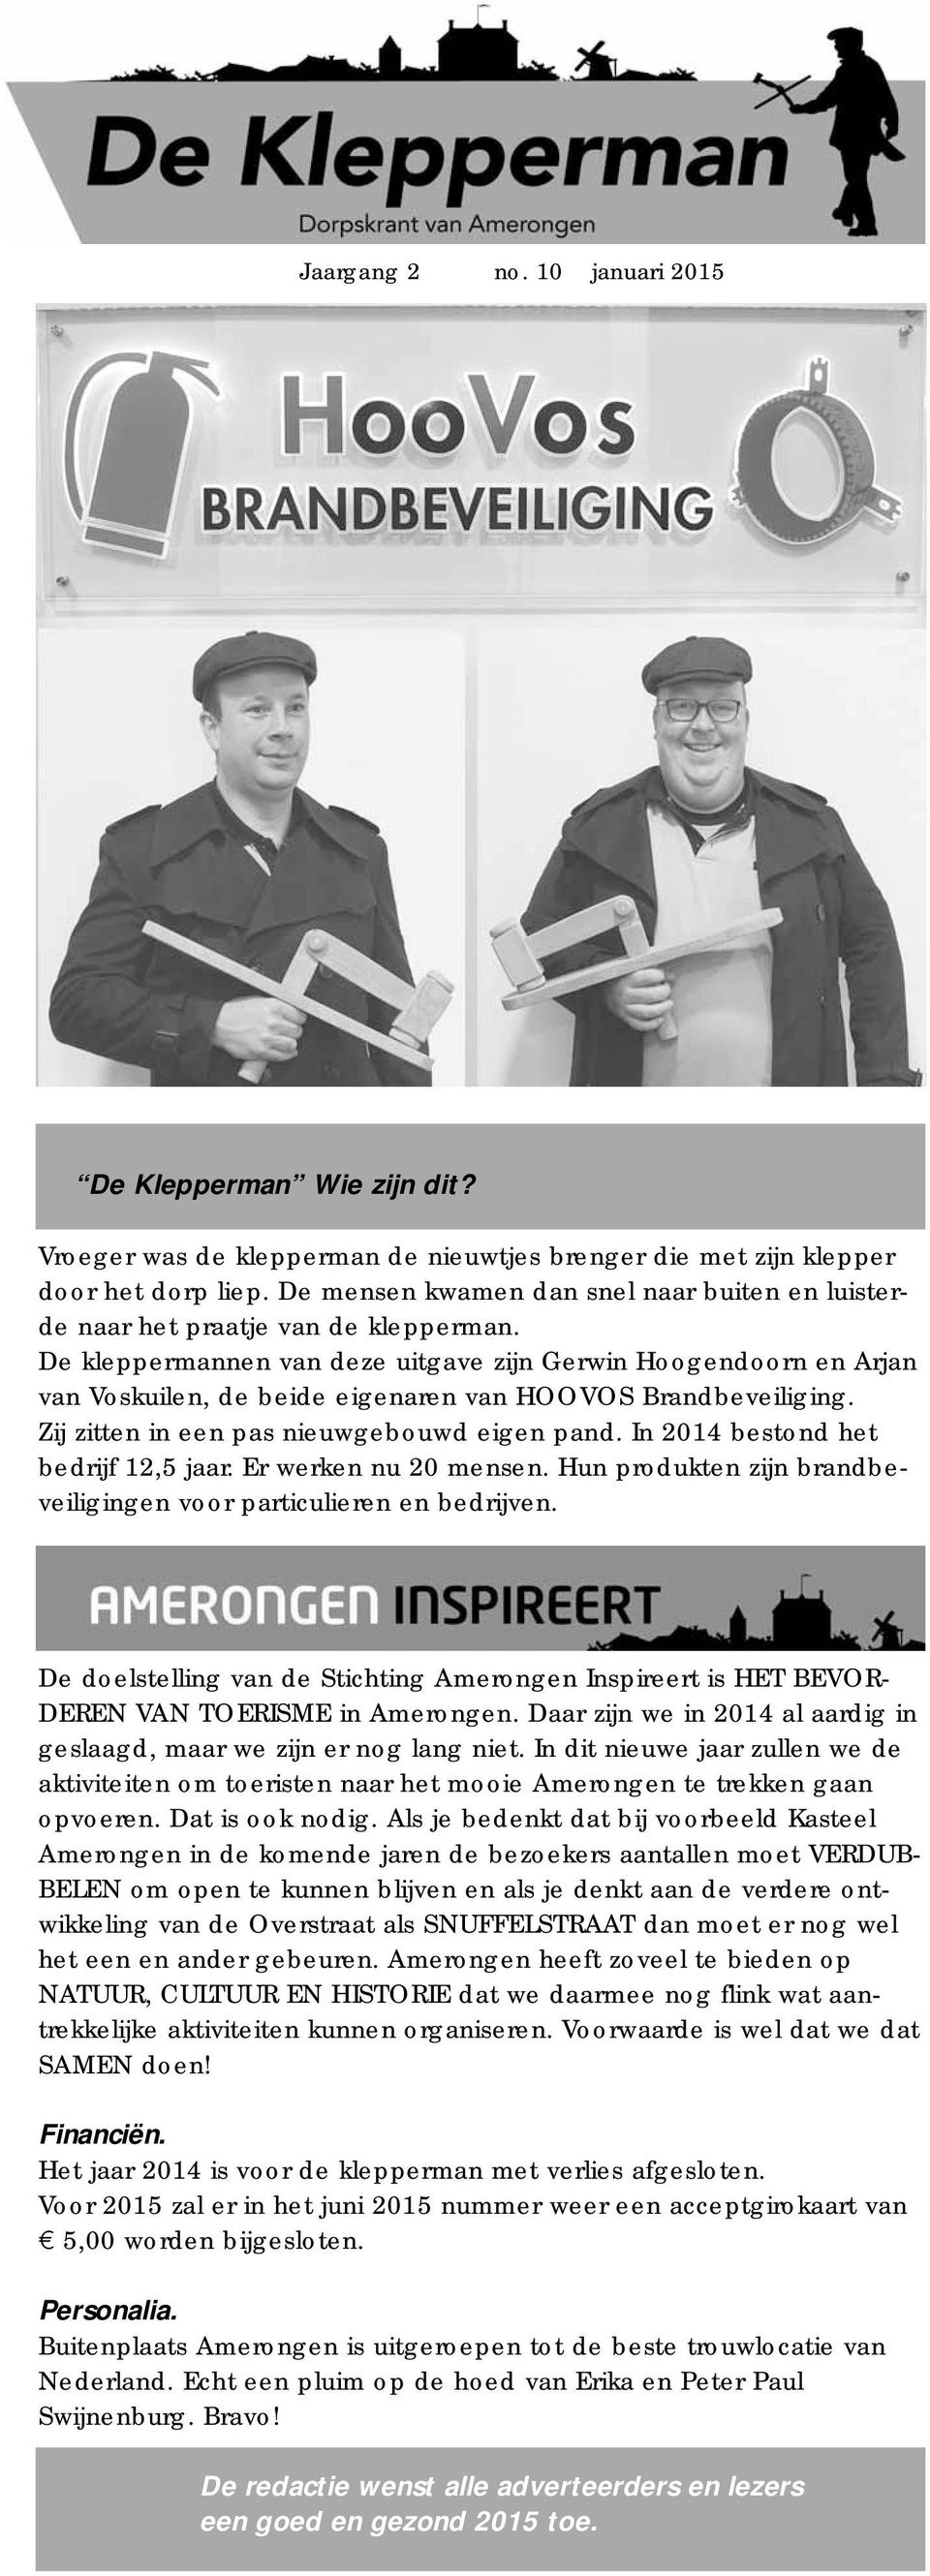 De kleppermannen van deze uitgave zijn Gerwin Hoogendoorn en Arjan van Voskuilen, de beide eigenaren van HOOVOS Brandbeveiliging. Zij zitten in een pas nieuwgebouwd eigen pand.